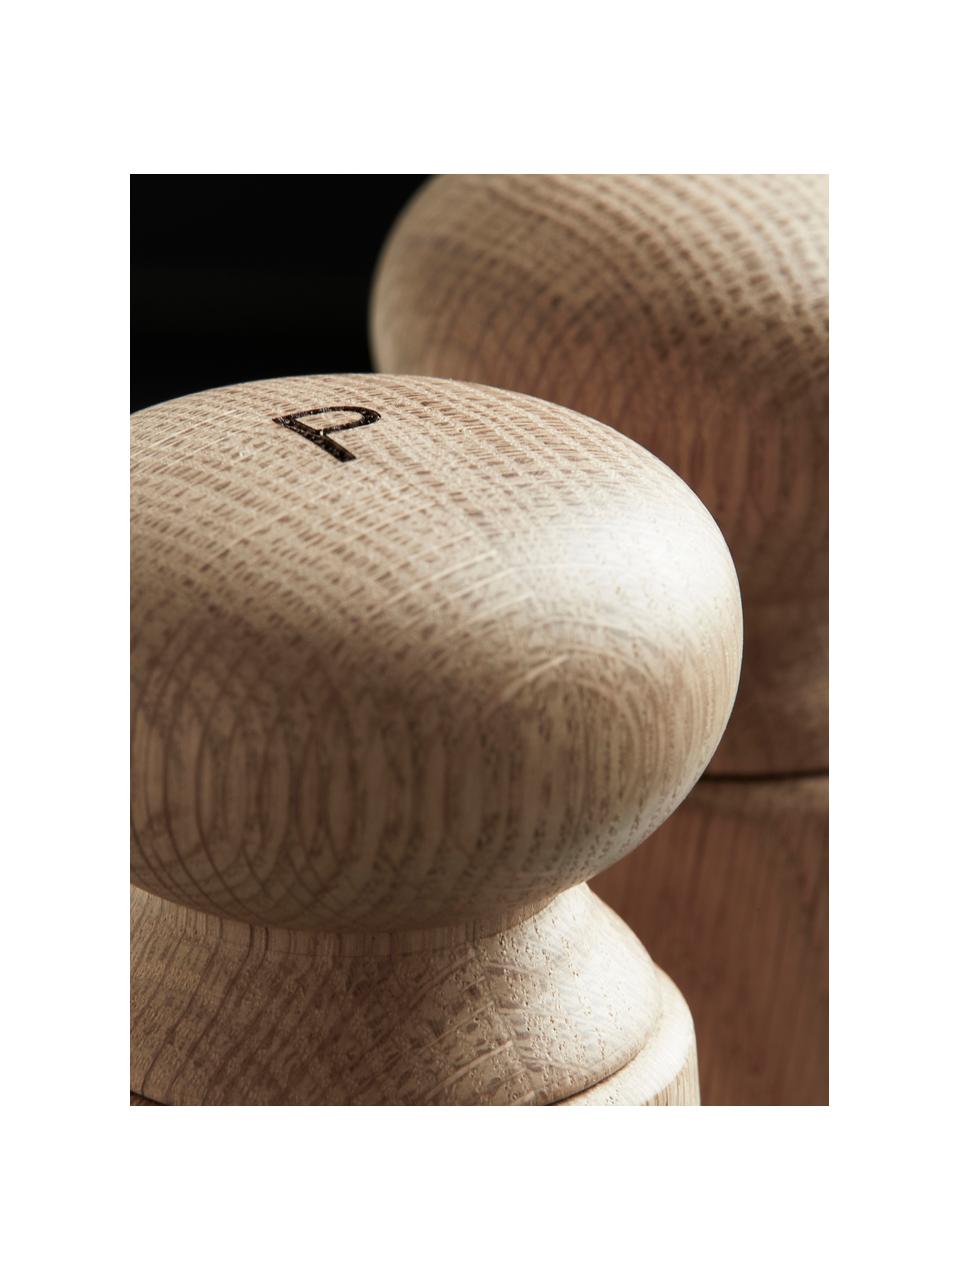 Salero y pimentero de roble Wardha, Cuerpo: madera de roble, Grinder: cerámica, Madera de roble, Ø 7 x Al 17 cm